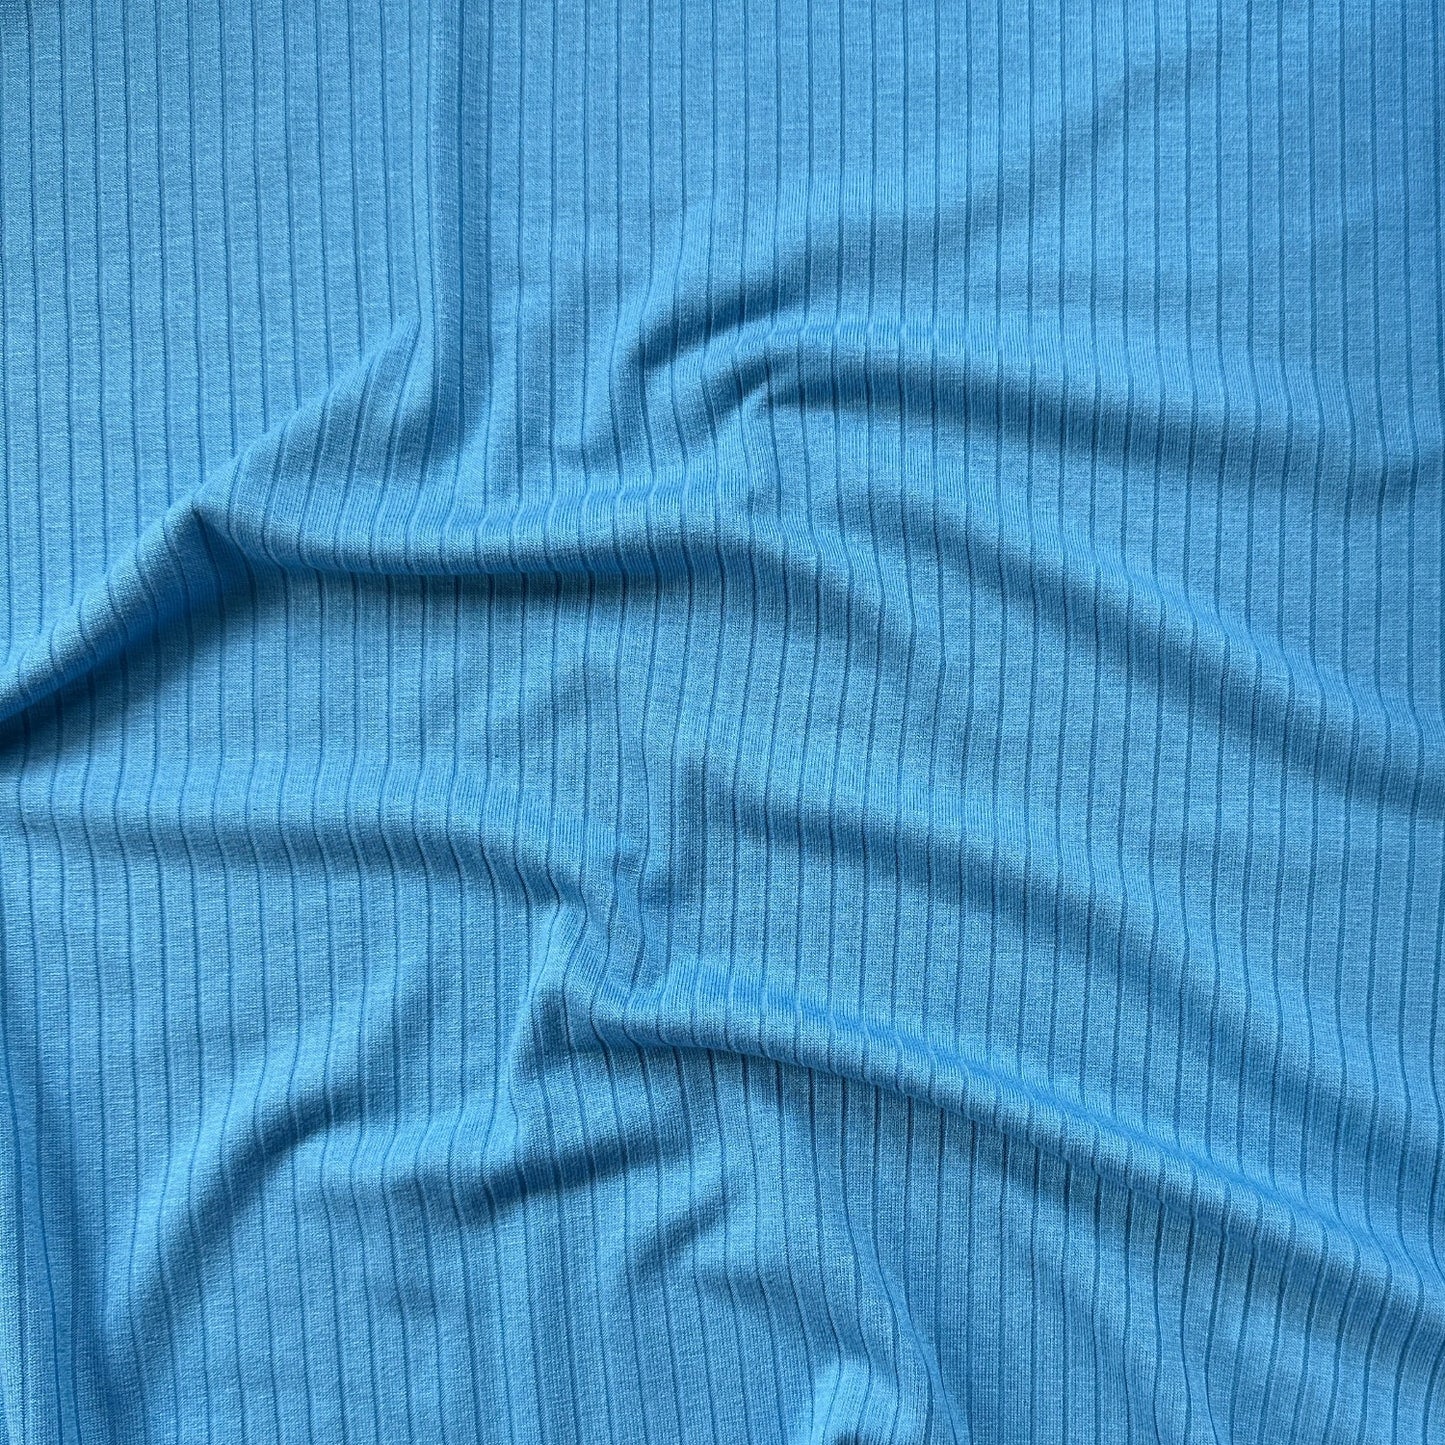 Blue Rib Knit Viscose Jersey Fabric